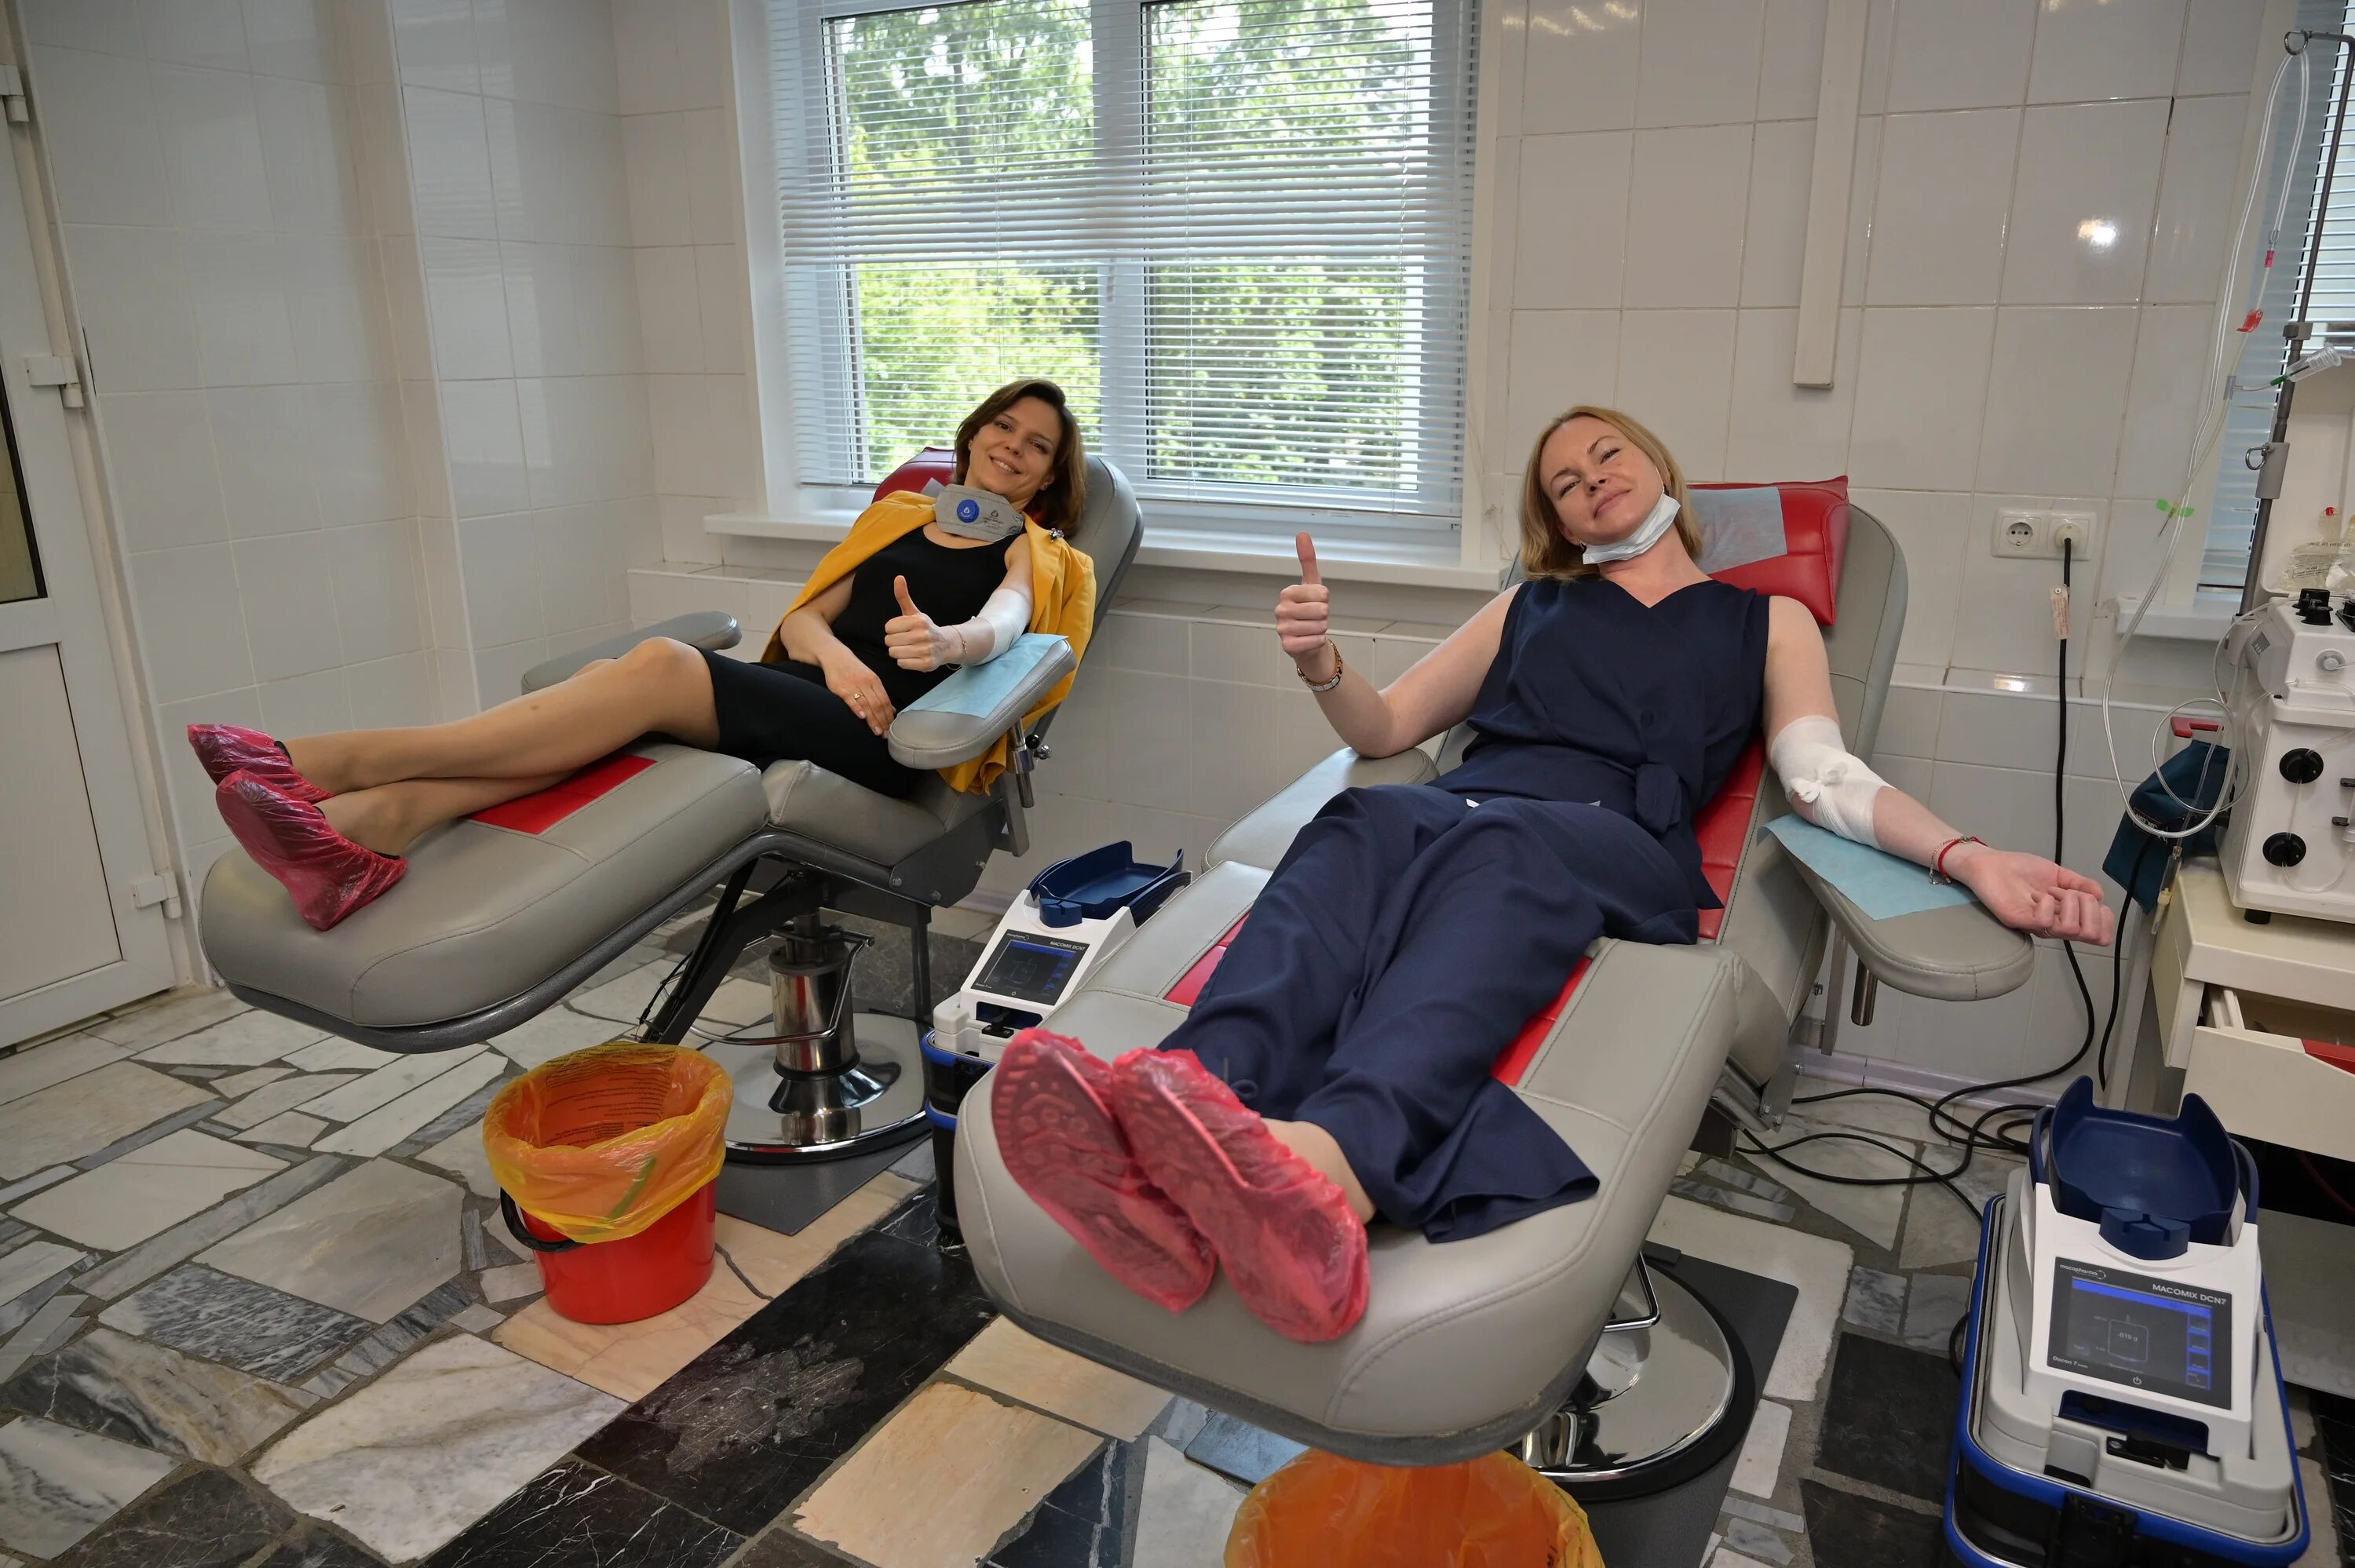 Донорство фмба. Центр крови станция переливания крови ФМБА. Кресло донора. Кресла для сдачи крови для донорства.